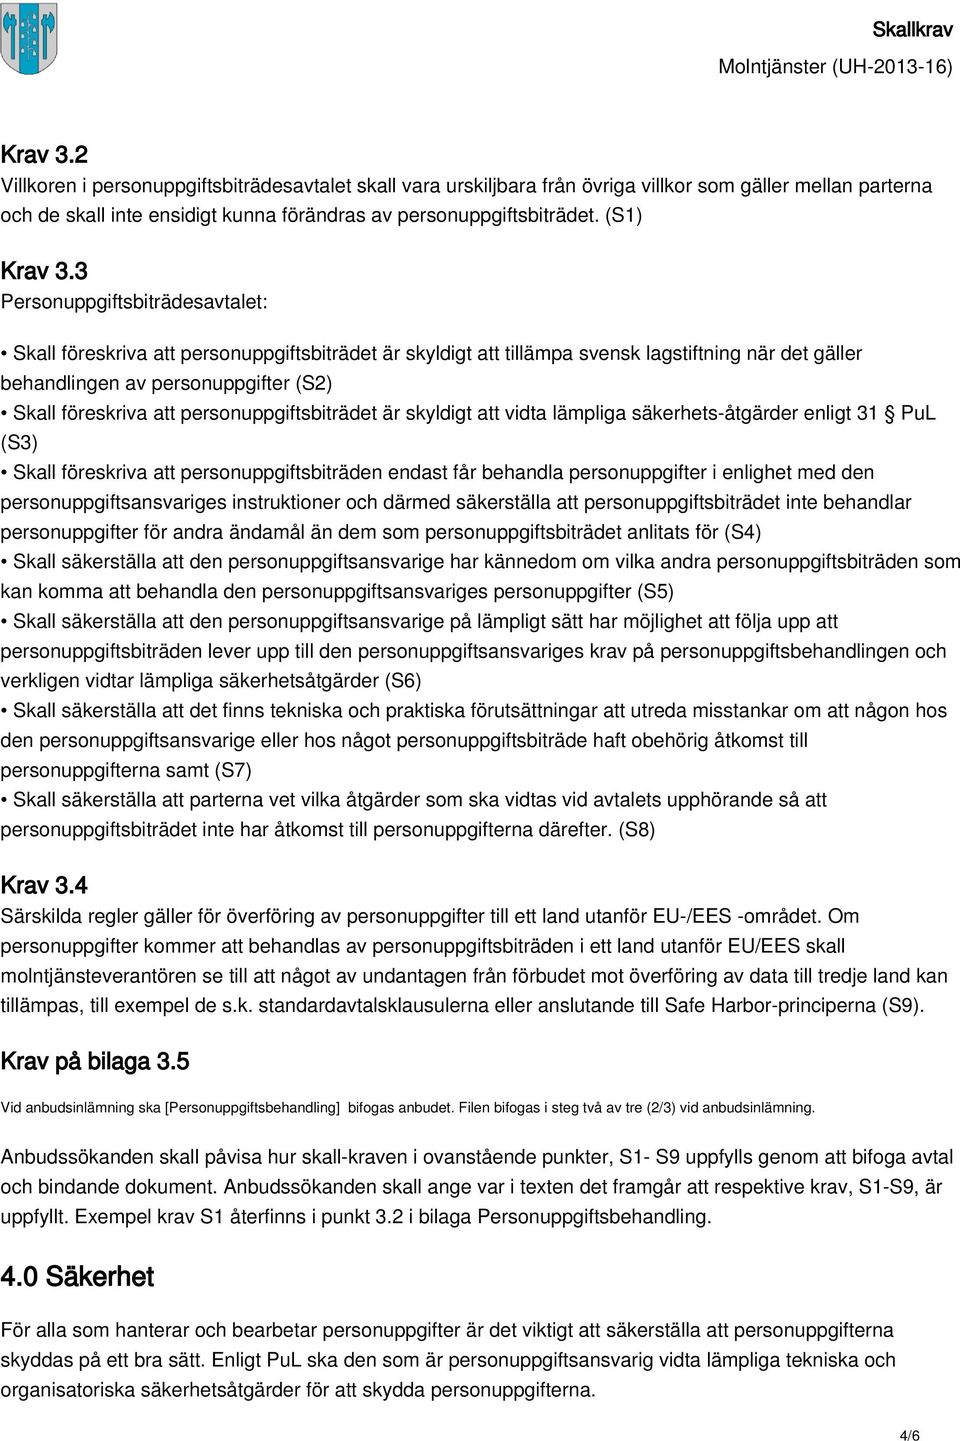 3 Personuppgiftsbiträdesavtalet: Skall föreskriva att personuppgiftsbiträdet är skyldigt att tillämpa svensk lagstiftning när det gäller behandlingen av personuppgifter (S2) Skall föreskriva att